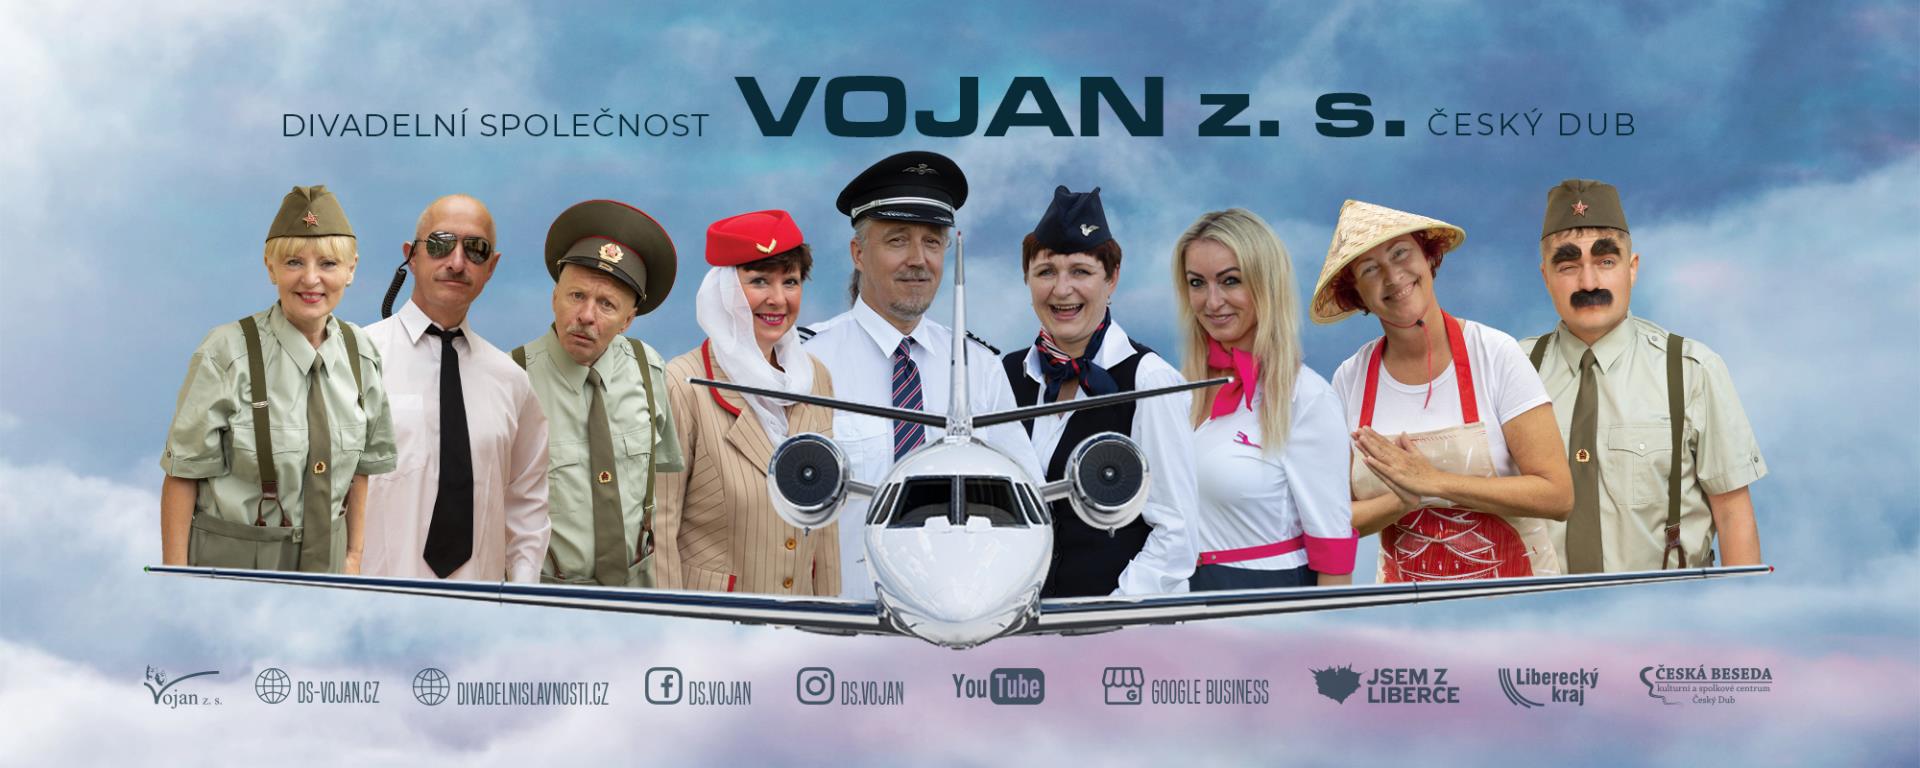 Divadelní společnost Vojan z. s. Český Dub 